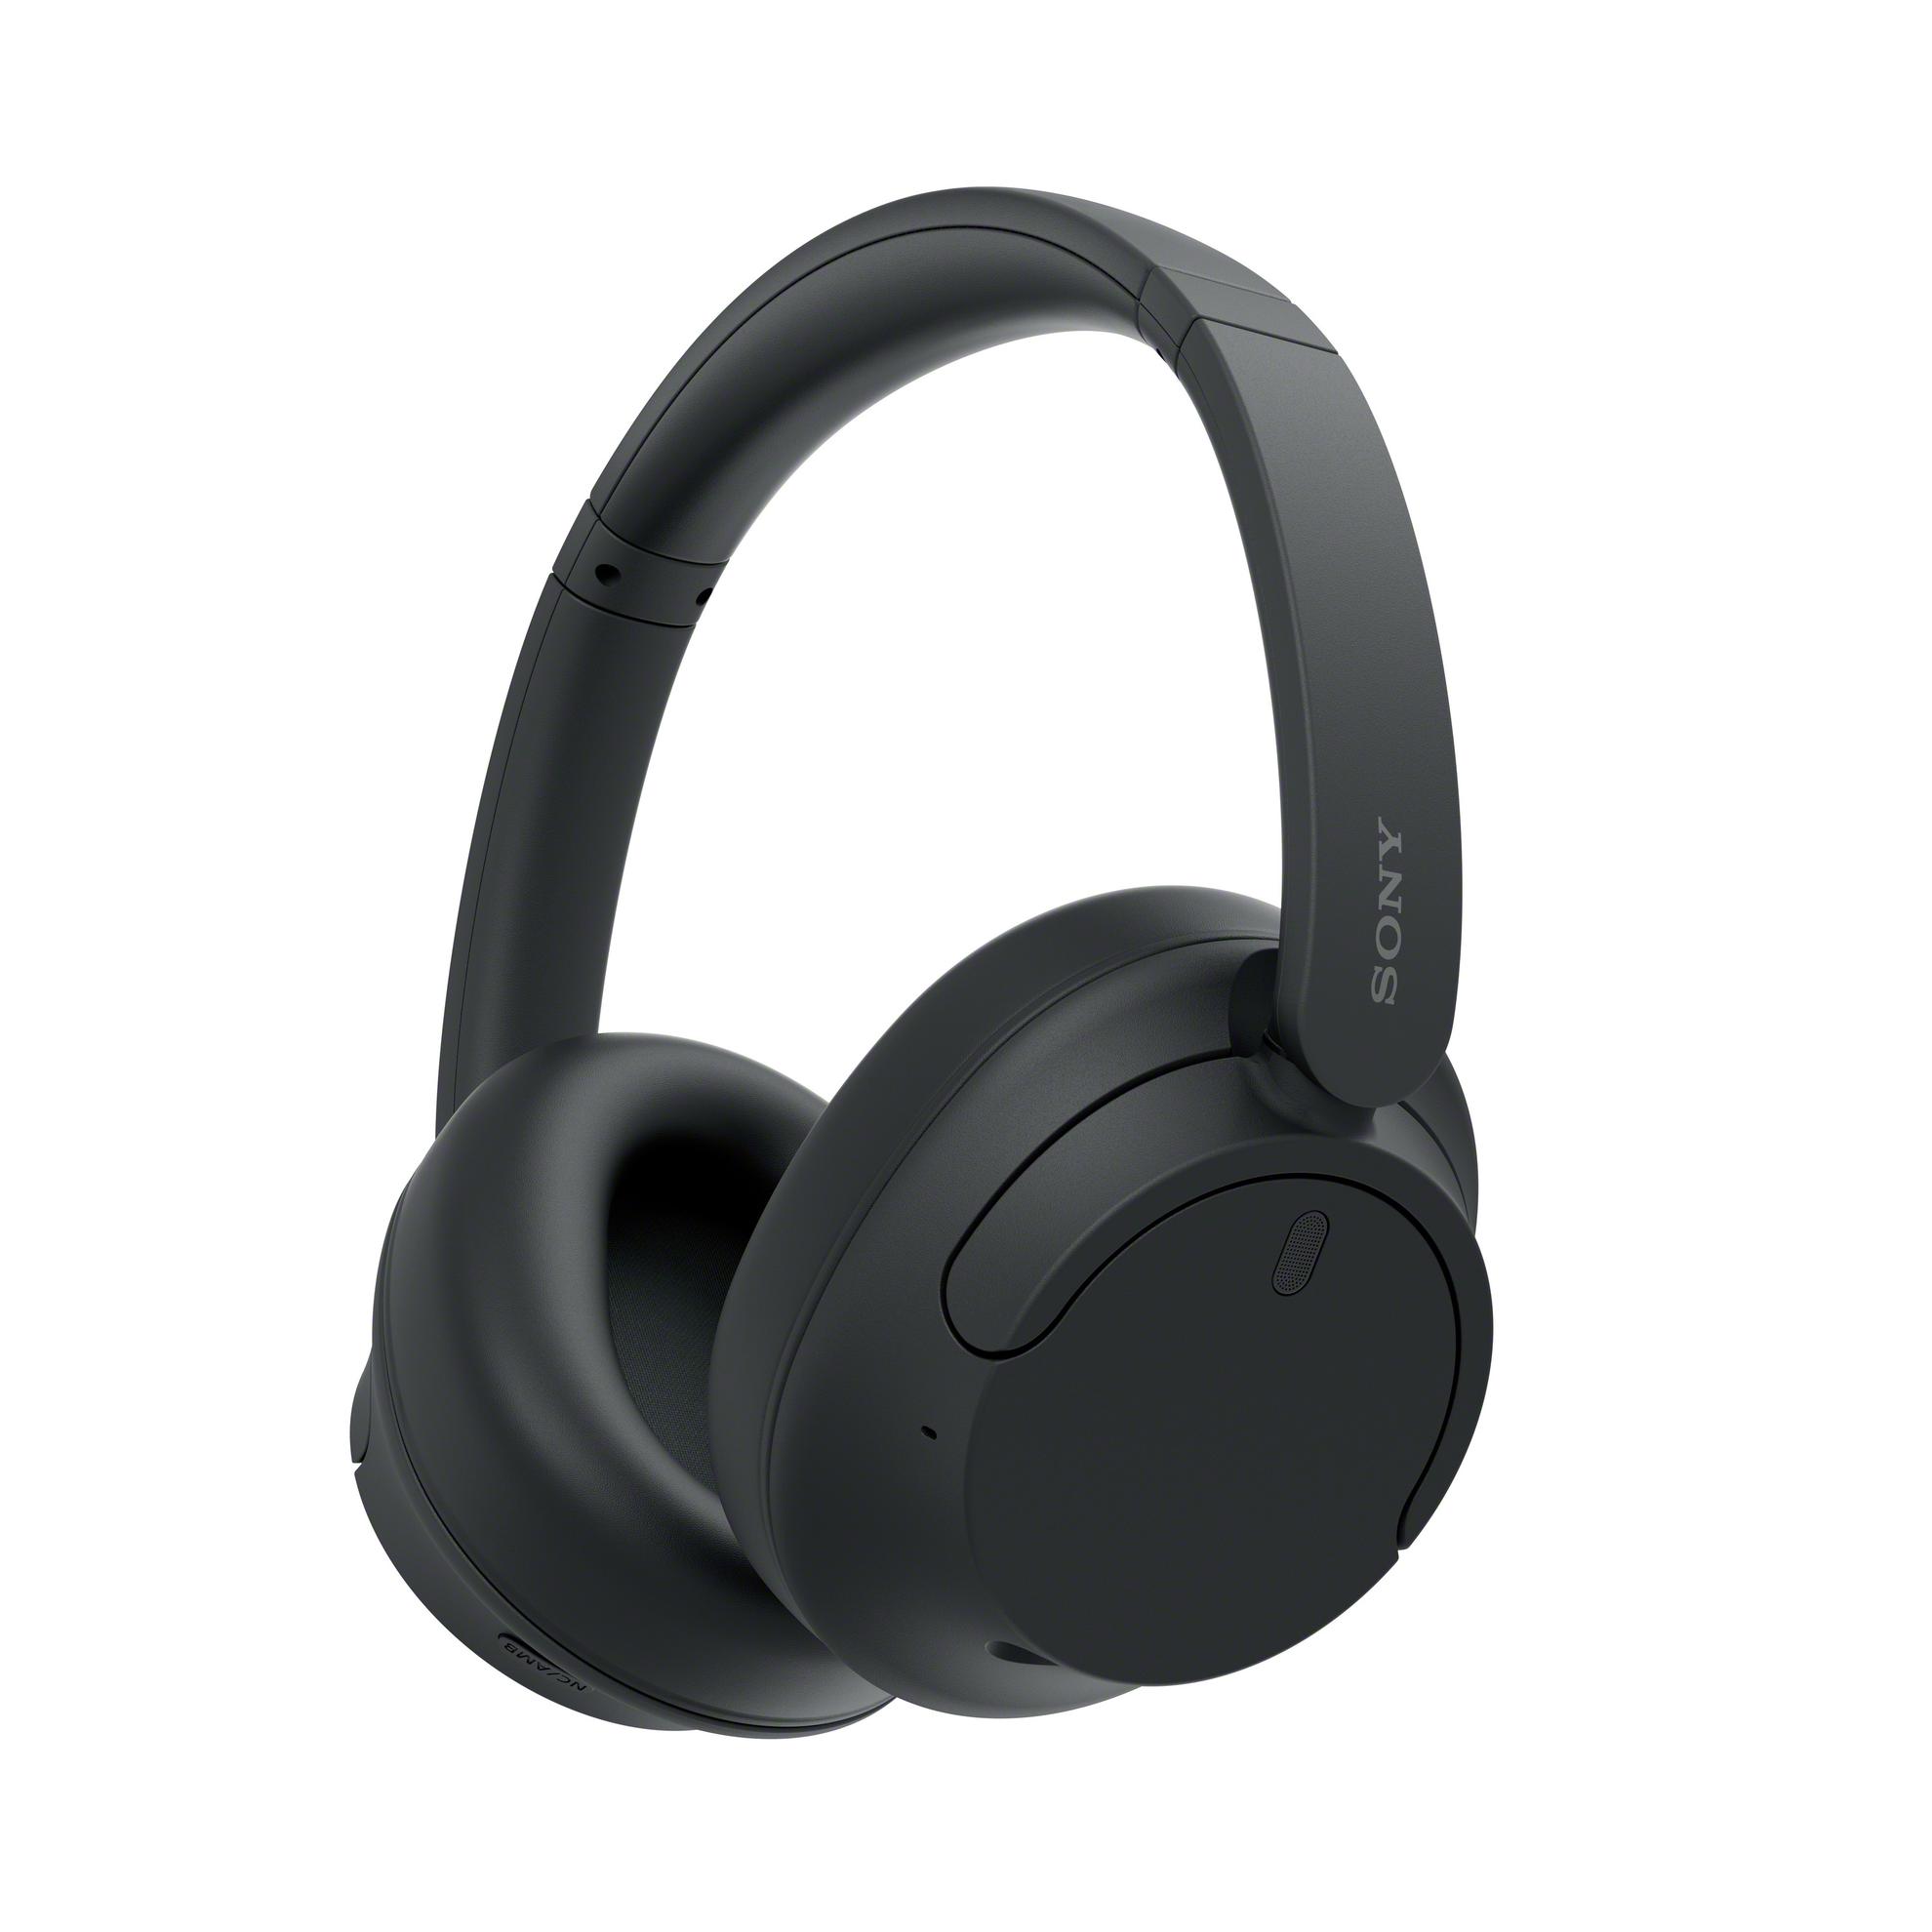 Offerta per Sony - WH-CH720N Cuffie Bluetooth wireless con cancellazione del rumore - Durata della batteria fino a 35 ore e ricarica rapida - Nero a 89,9€ in Euronics